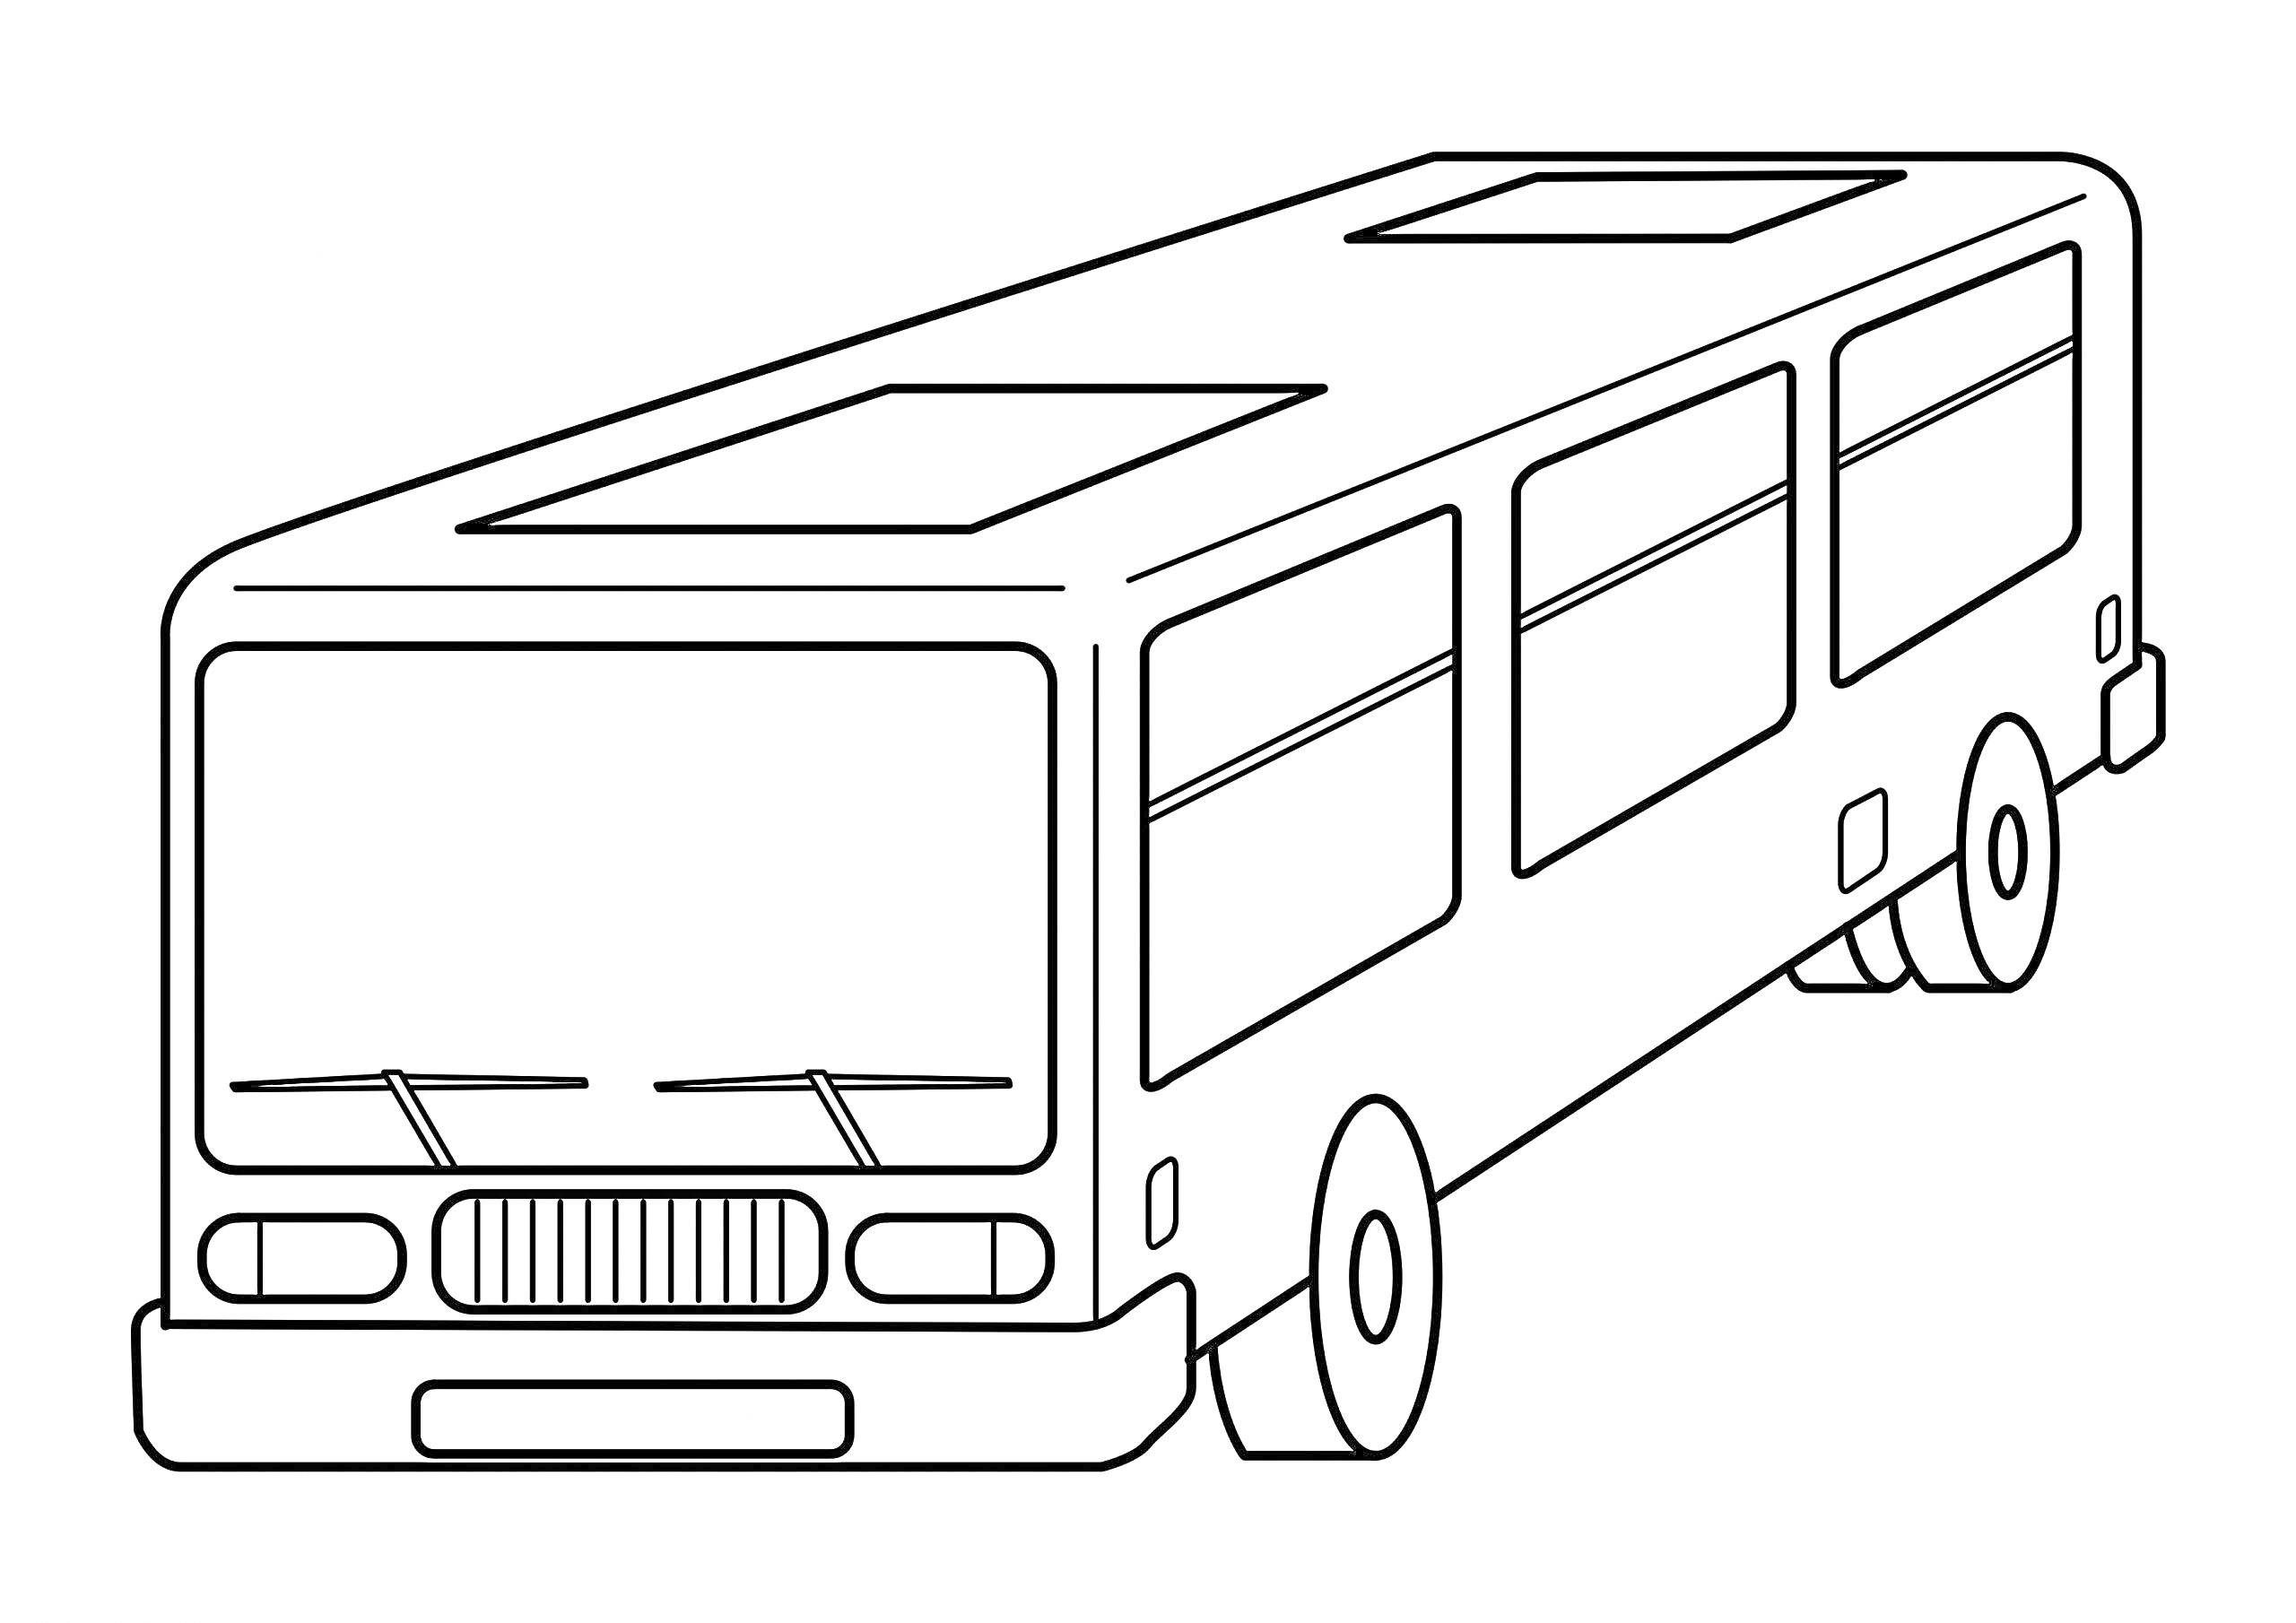 Раскраска Автобус с квадратными окнами, передними фарами и полосками на крыше